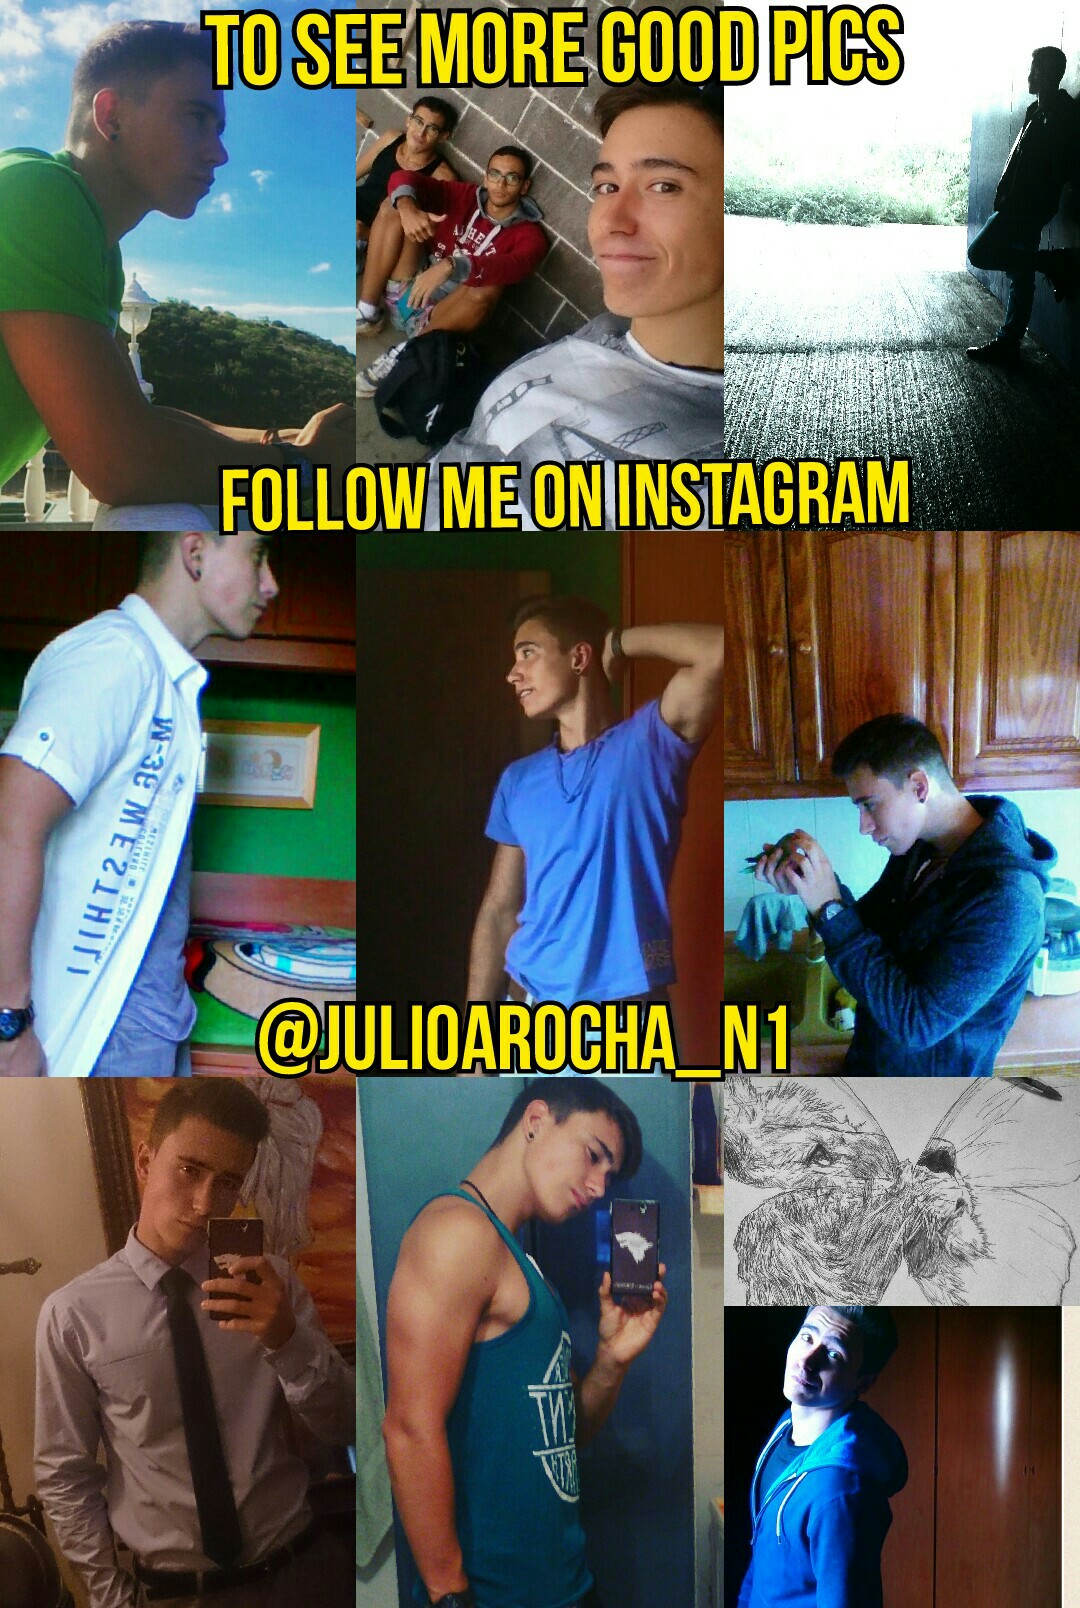 follow me on instagram: @julioarocha_n1